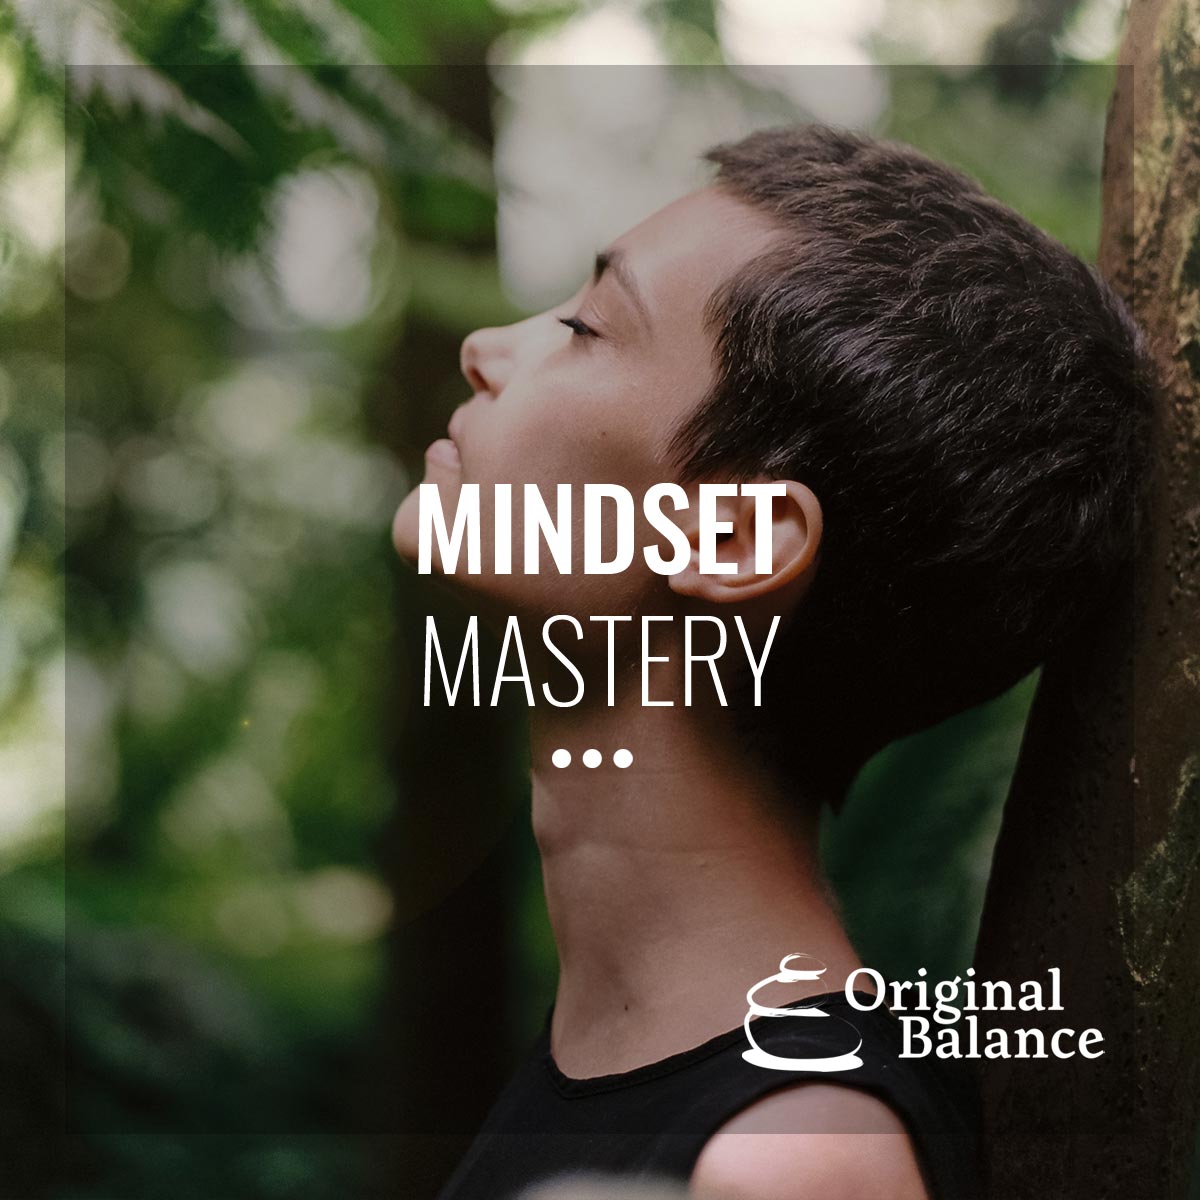 Mindset-mastery